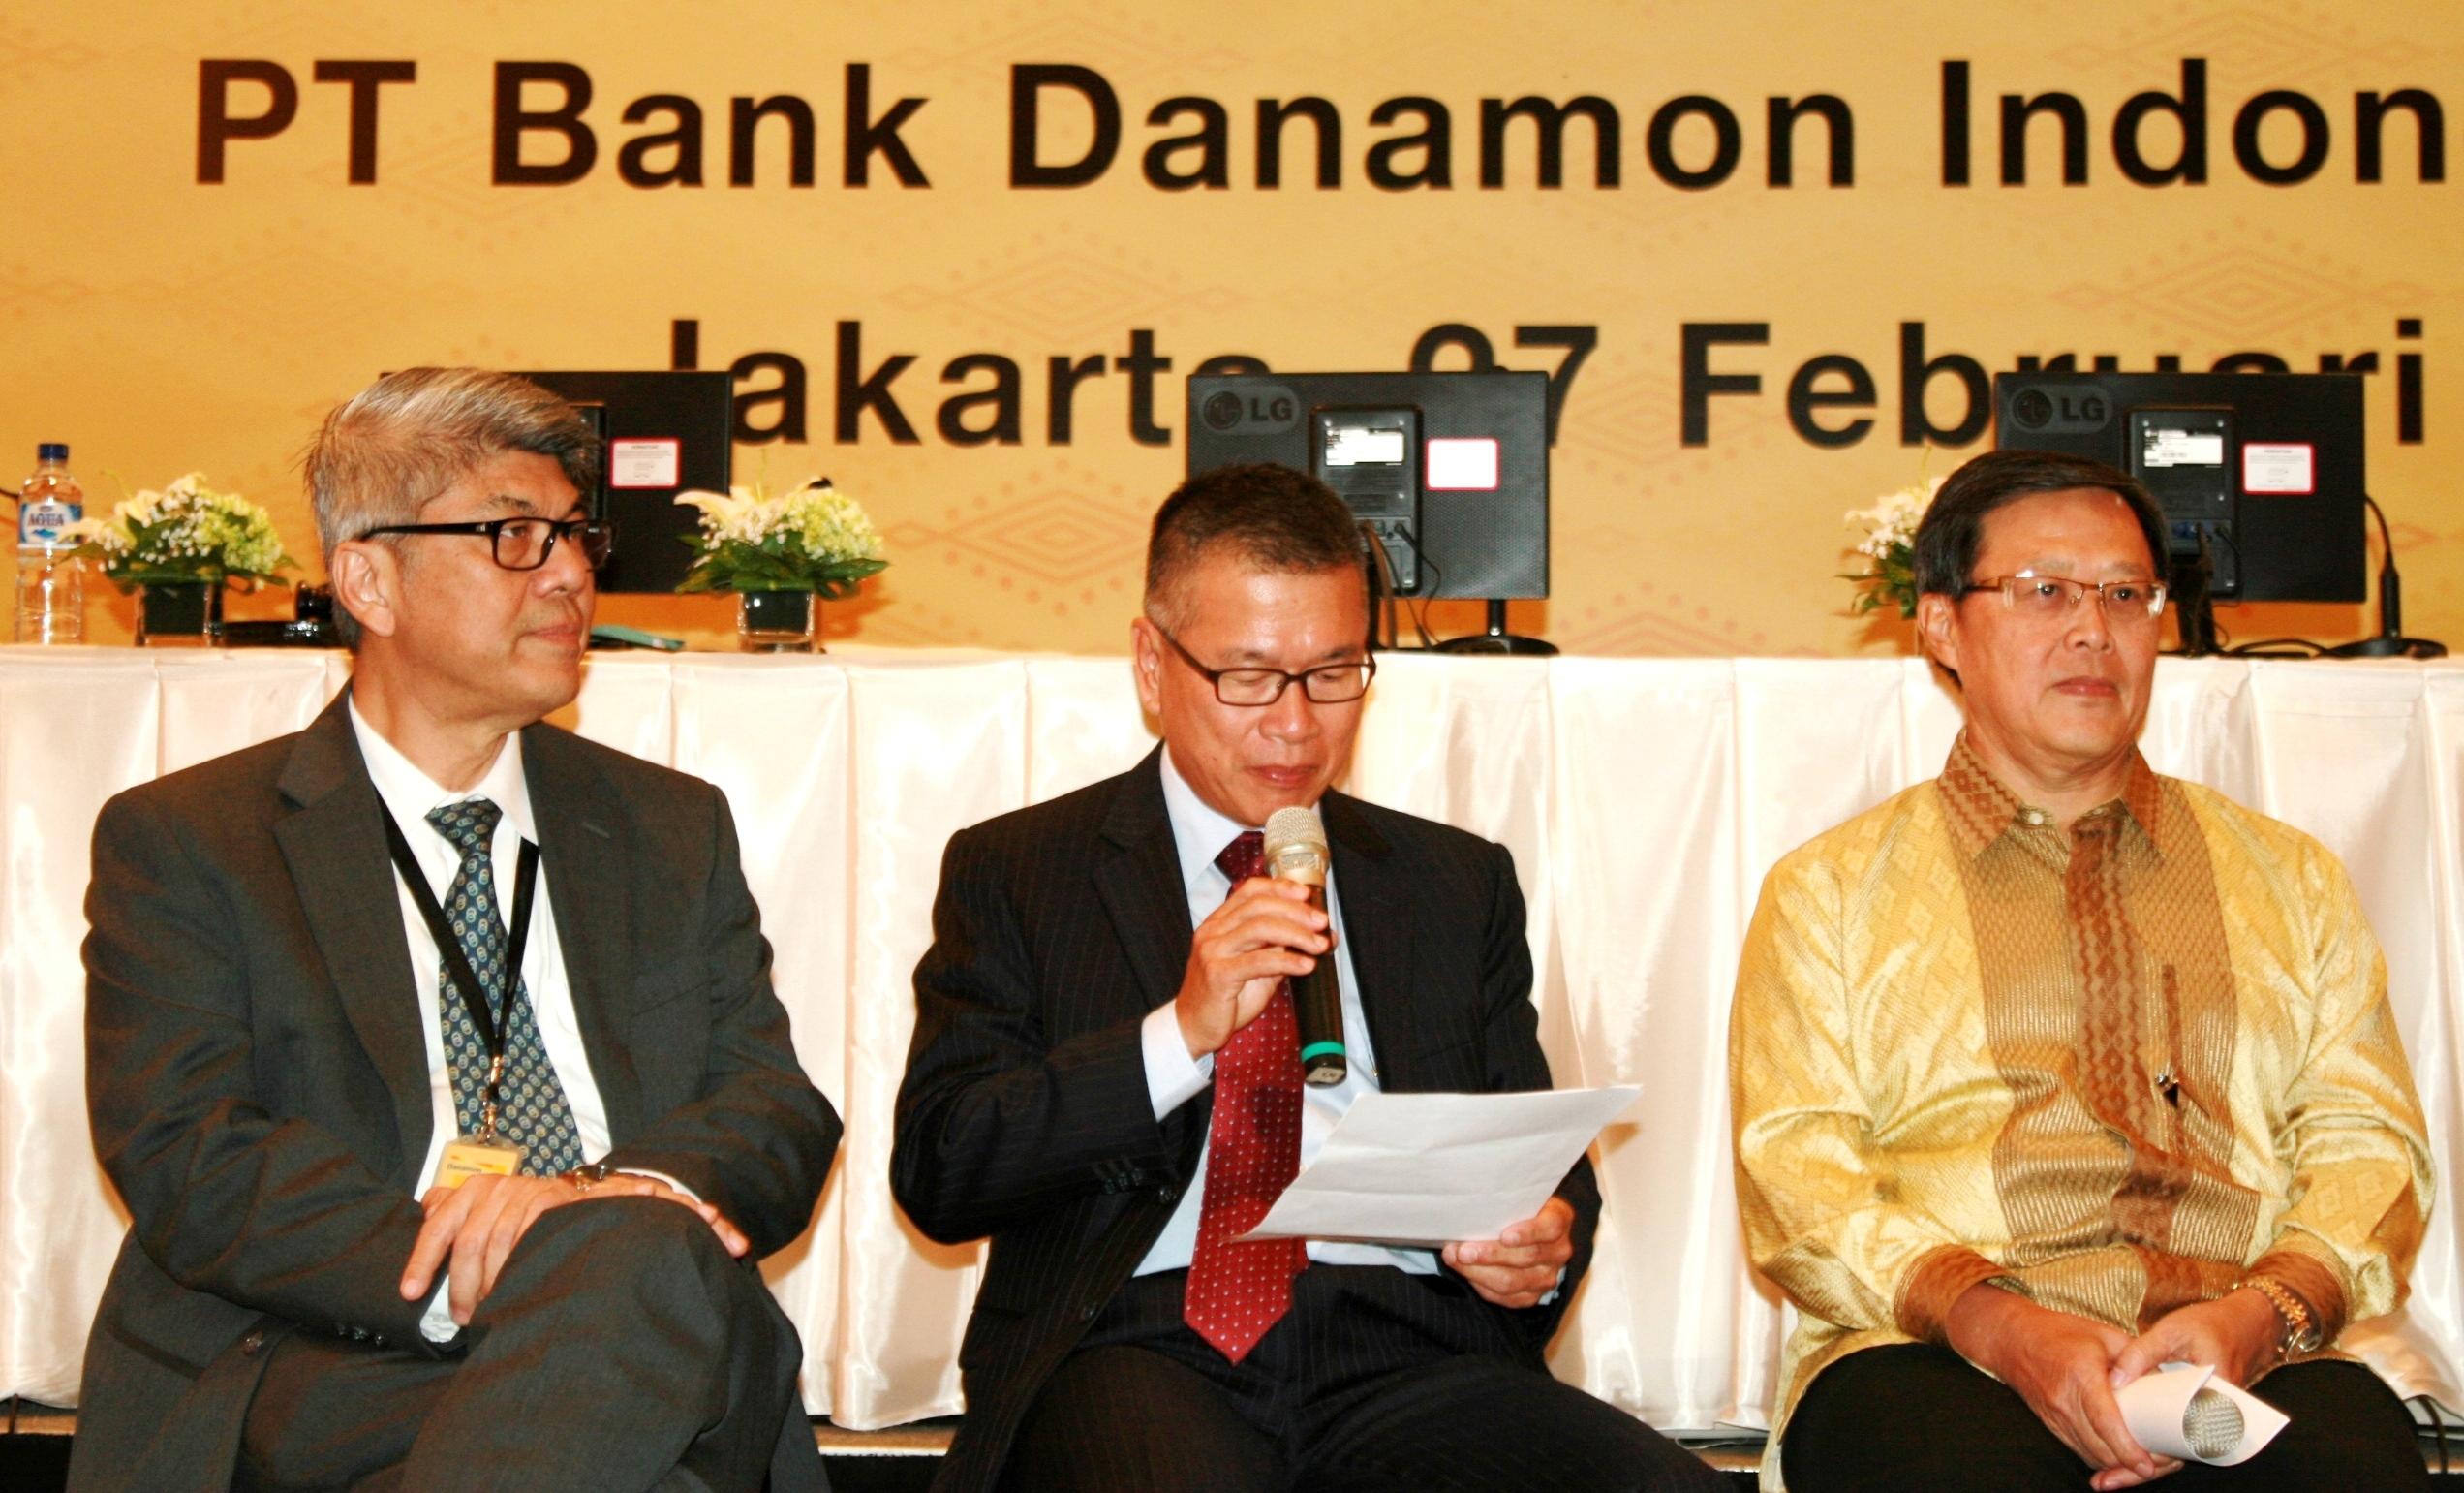 Bank Danamon Bagi Dividen Rp97,48 per Saham